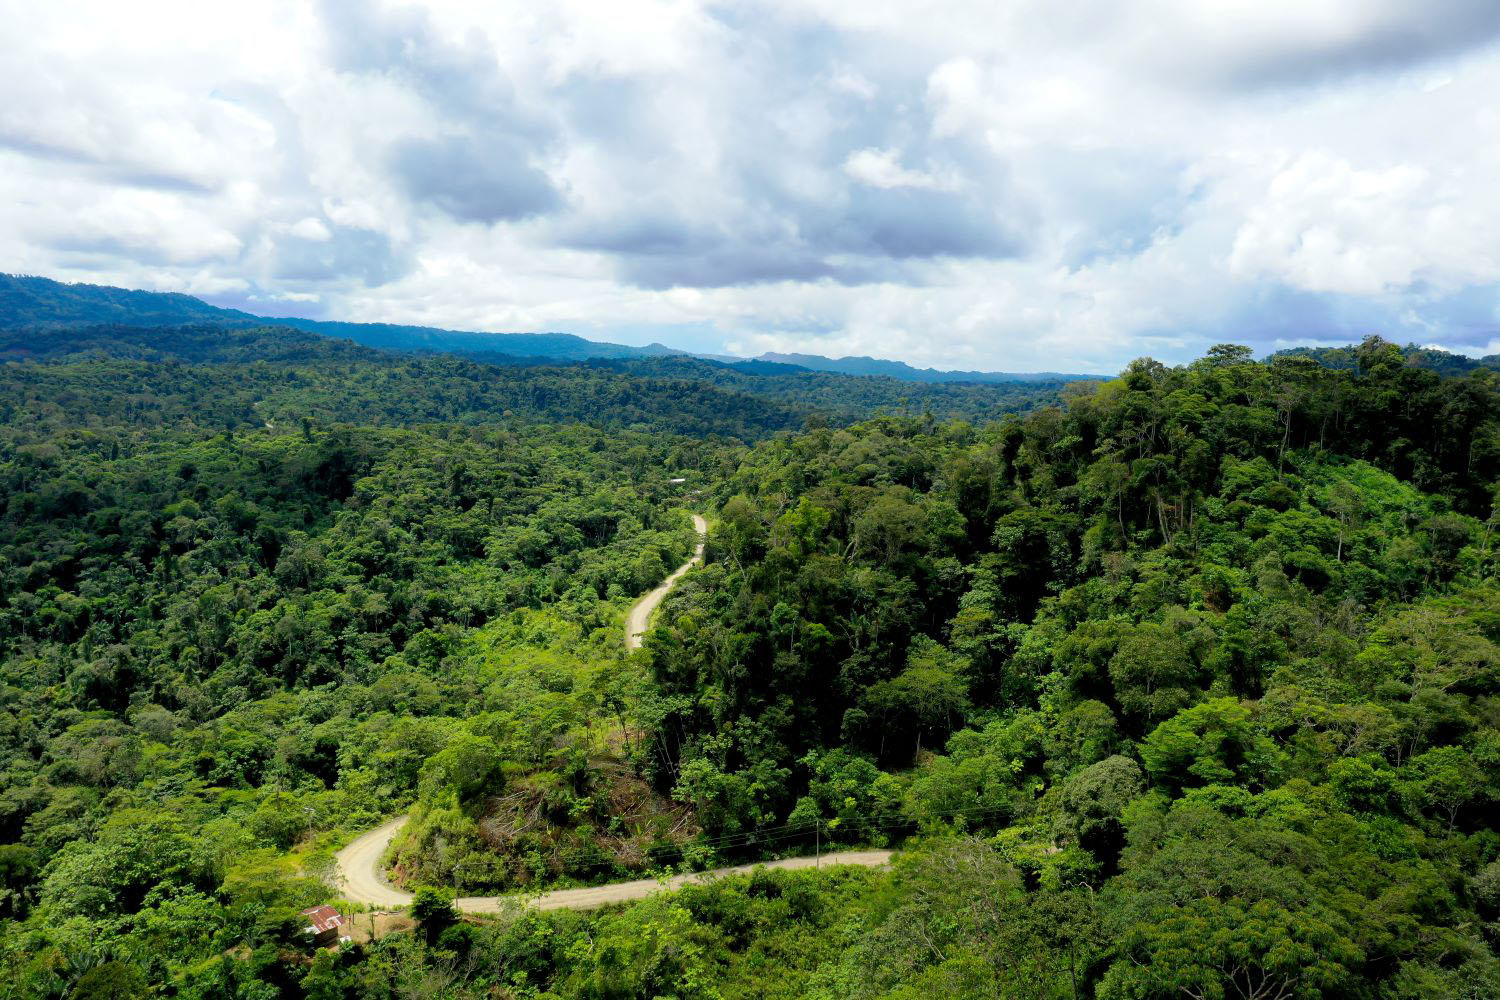 A dirt road running through the Amazon of Ecuador